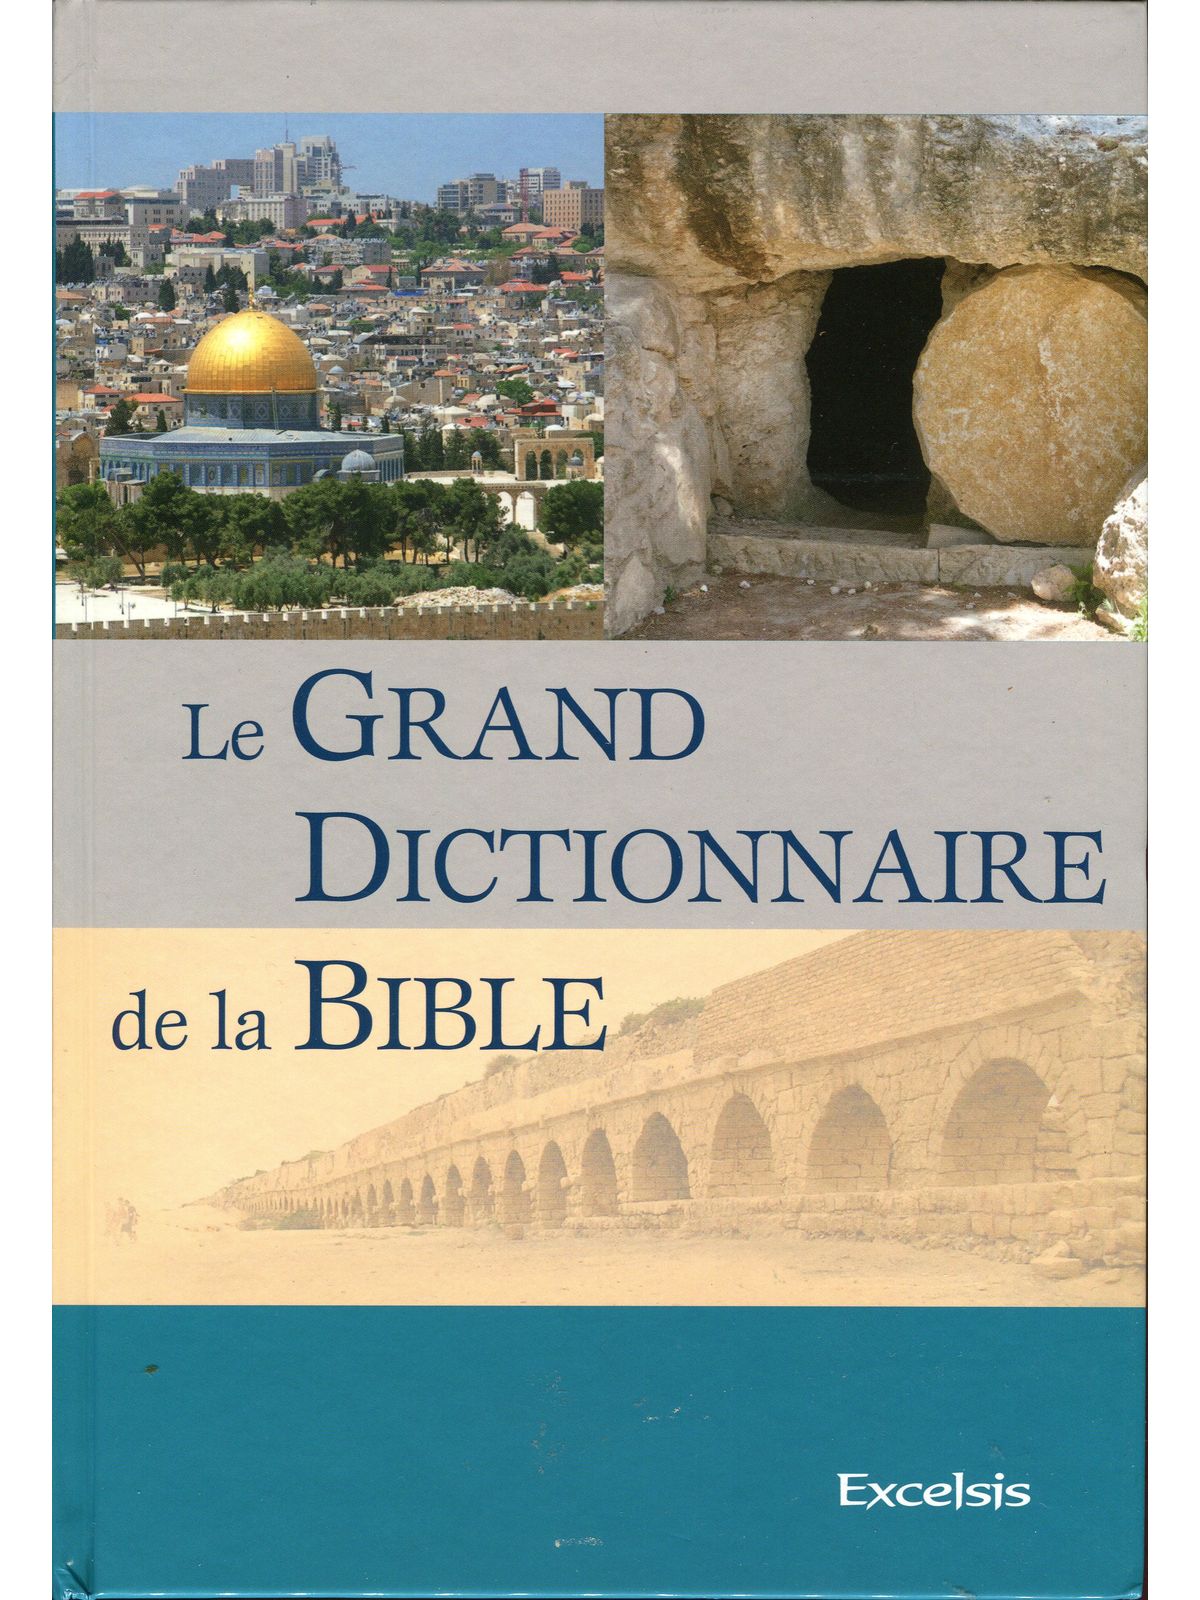 dictionnaire de la bible (le grand)